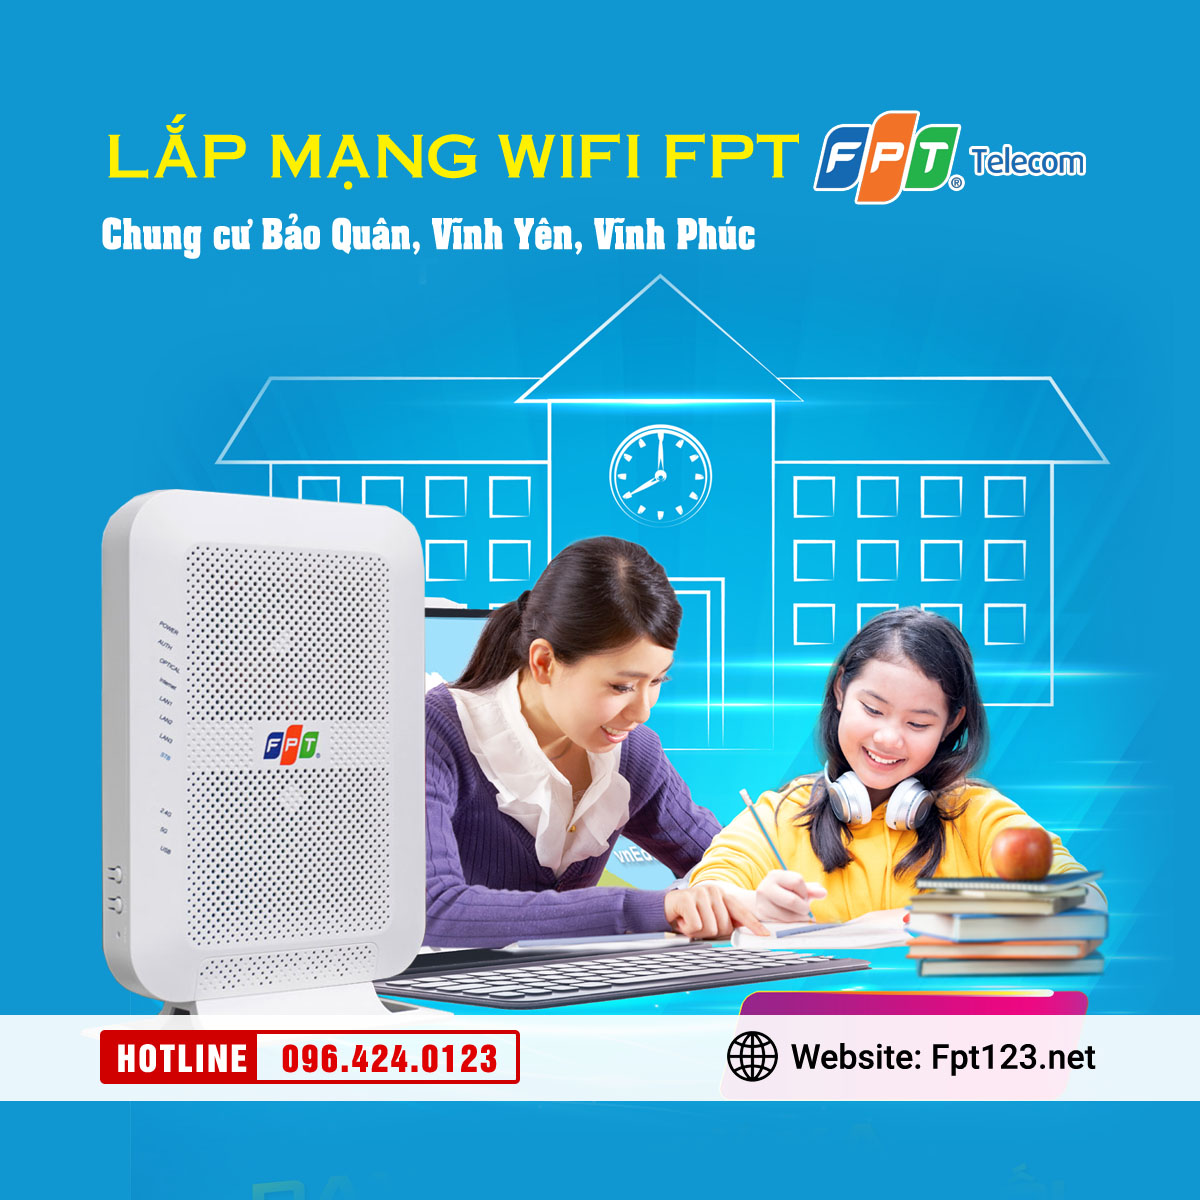 Lắp mạng wifi FPT ở chung cư Bảo Quân, Vĩnh Yên, Vĩnh Phúc